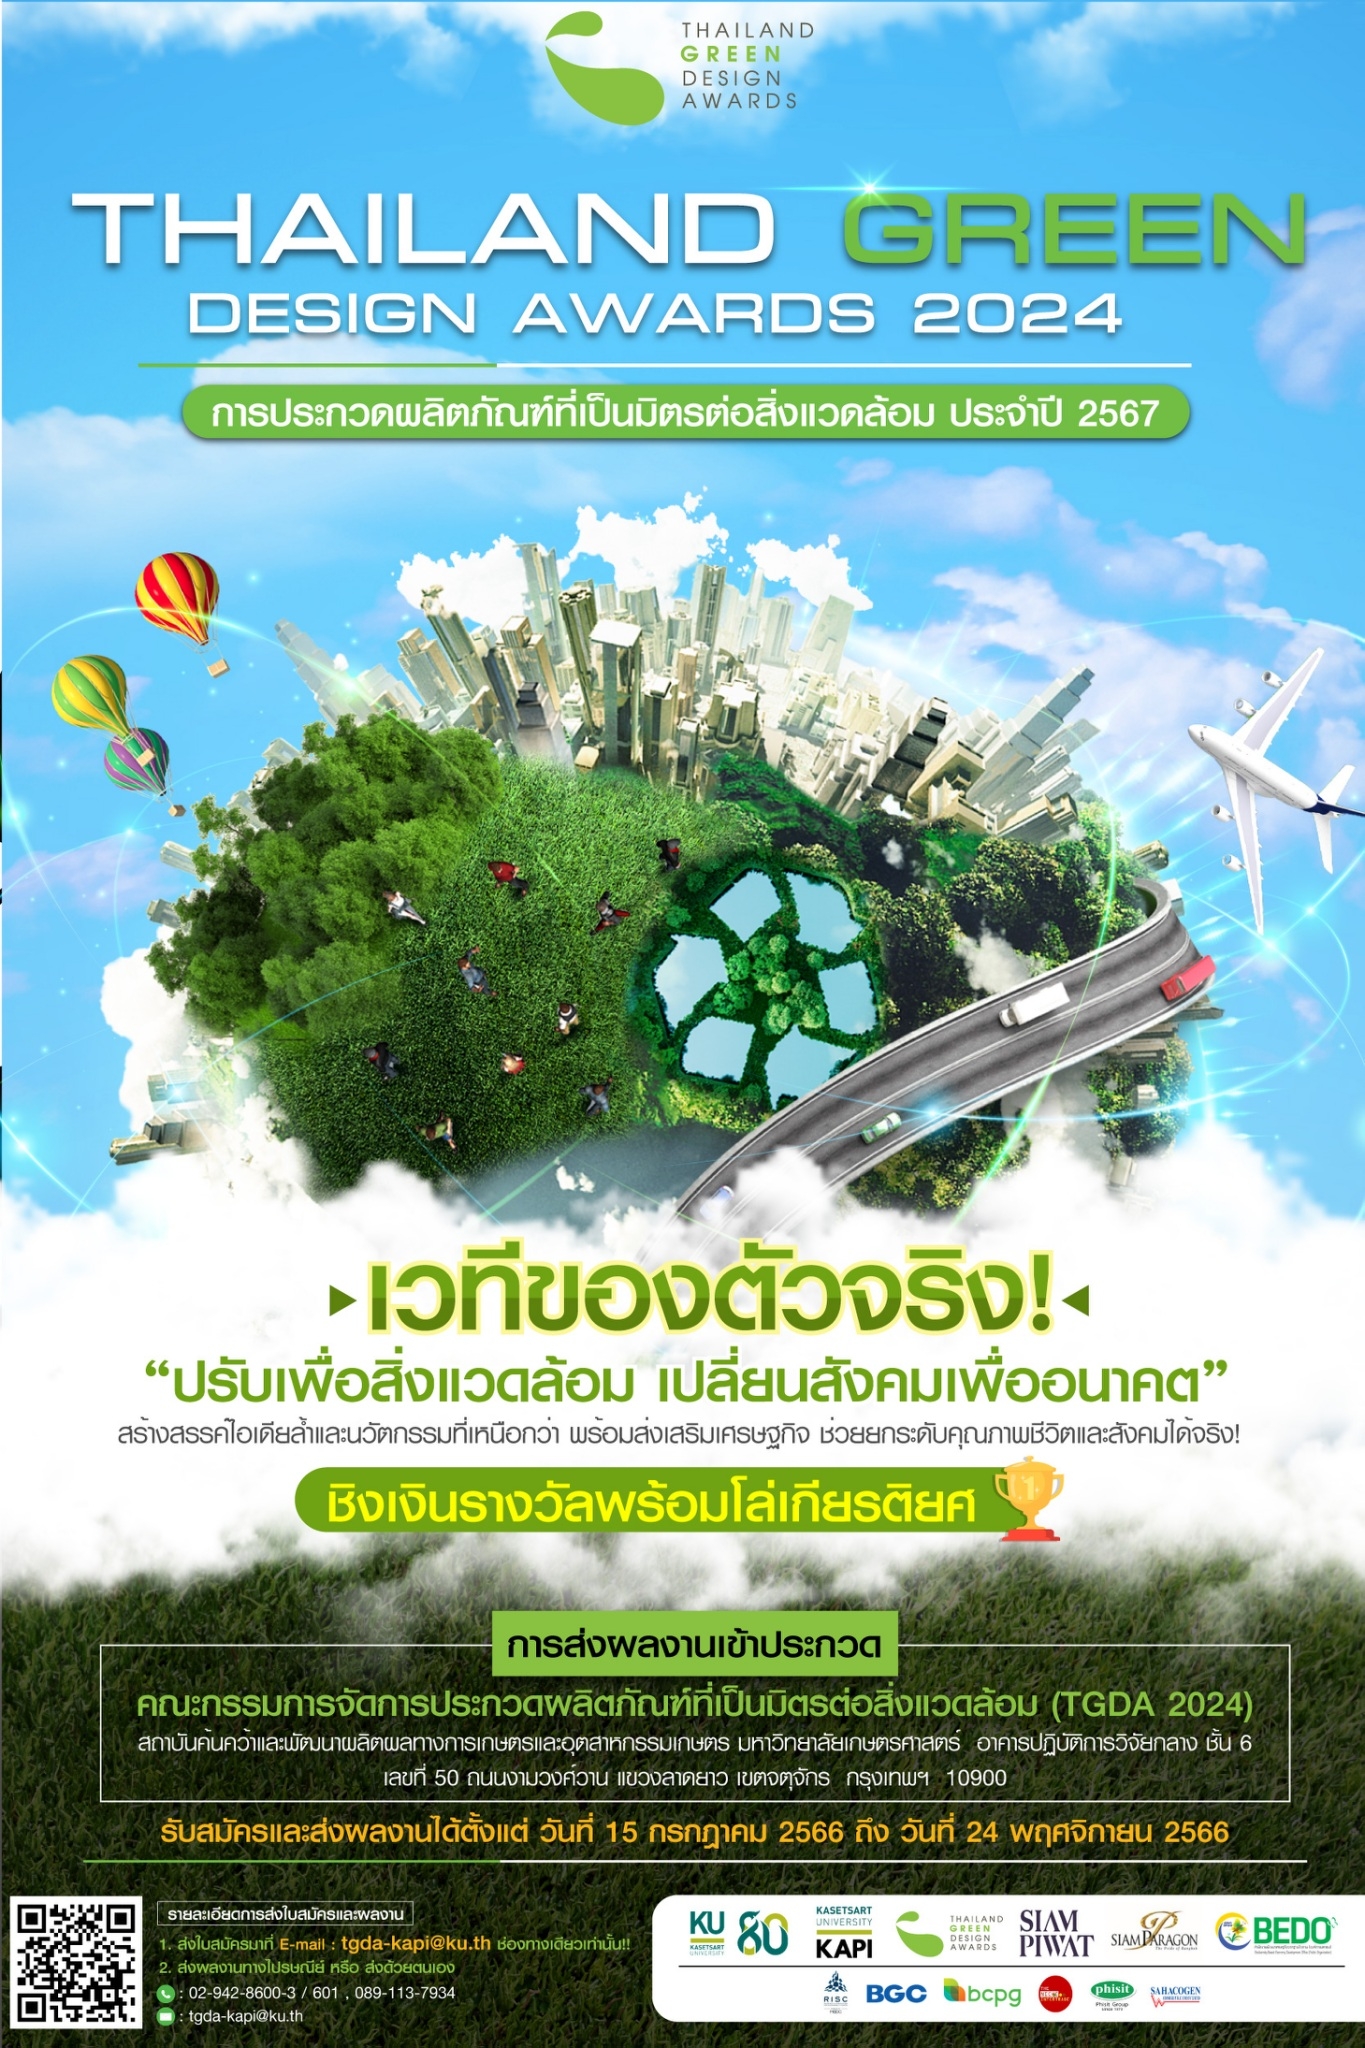 Thailand Green Design Awards 2024